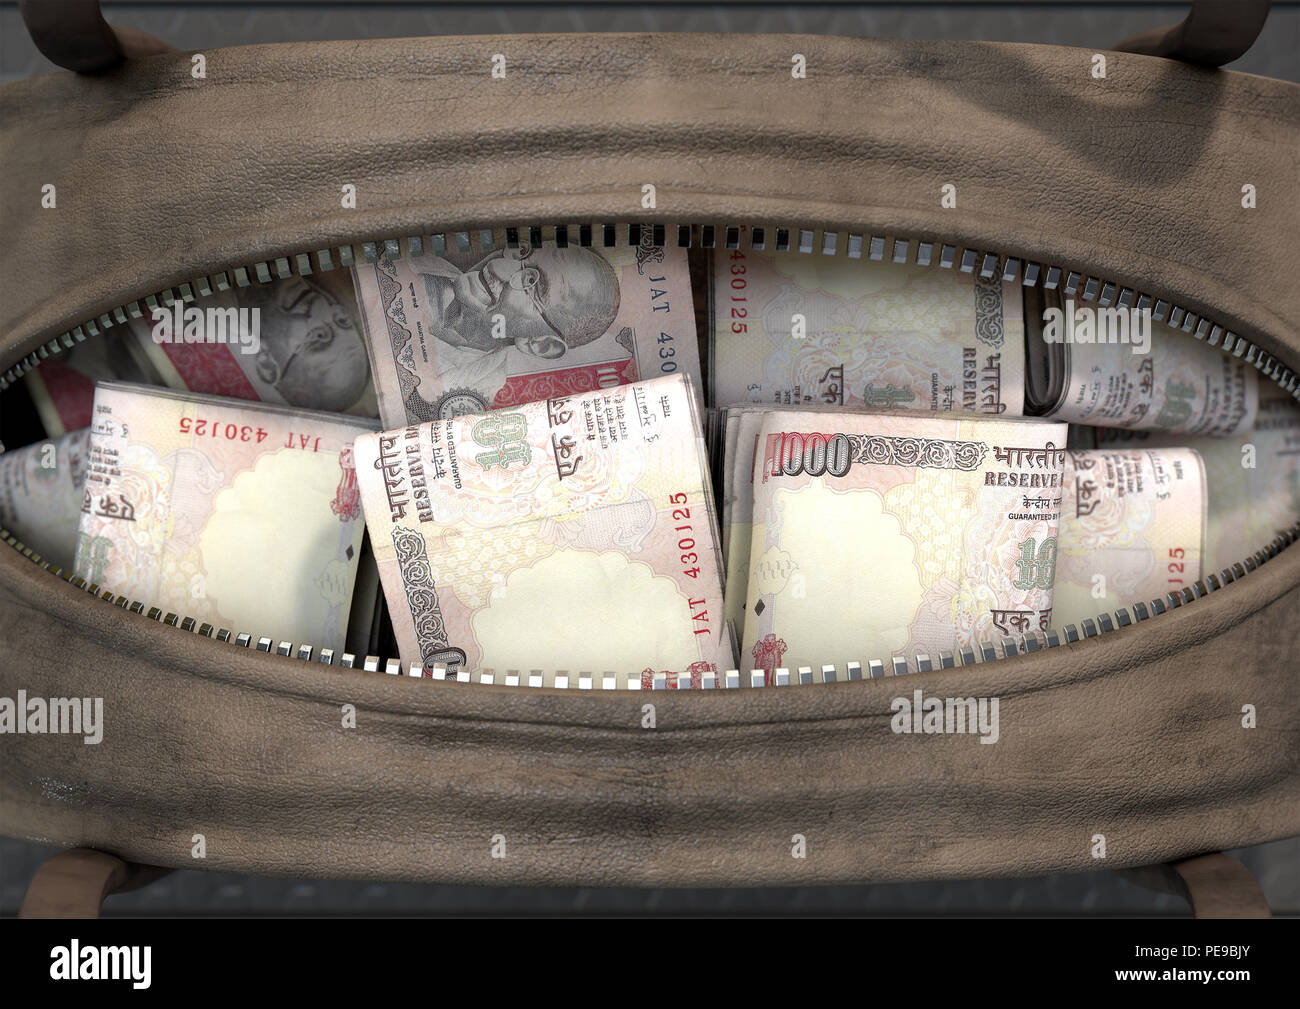 Ein schmuggel Konzept, das eine offene braun Leder Reisetasche enthüllt Bündel illegaler gerollt Indian Rupee Notizen - 3D-Rendering Stockfoto